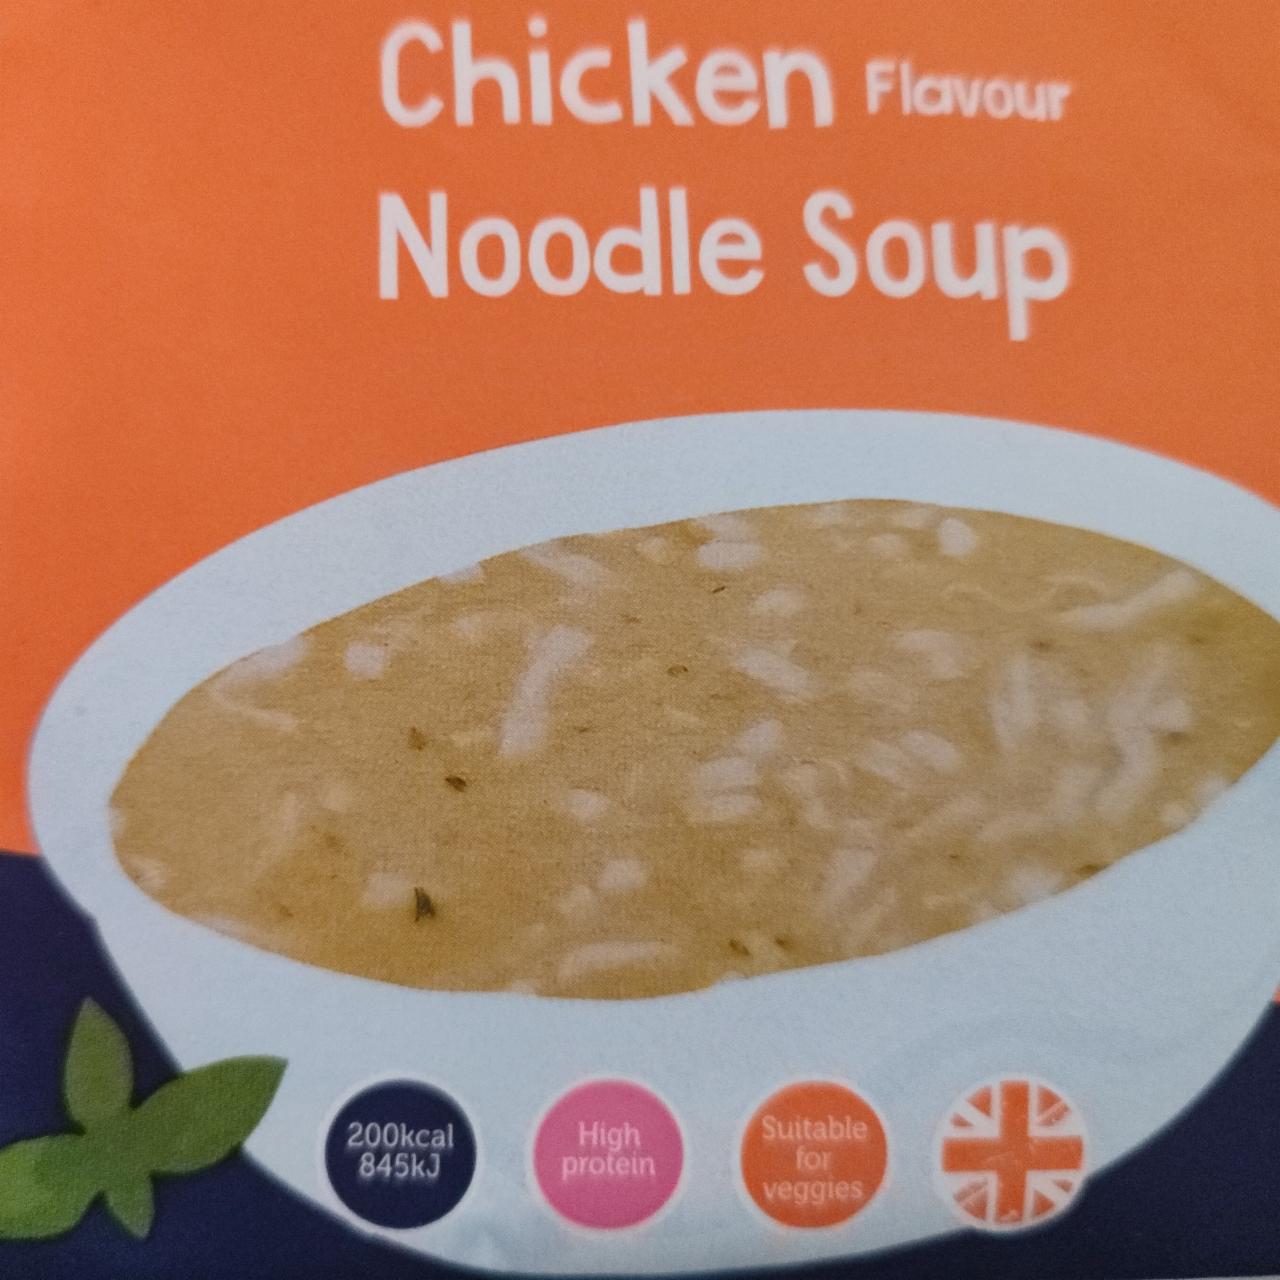 Fotografie - The 1:1 diet Chicken flavour noodle soup Cambridge Weight Plan